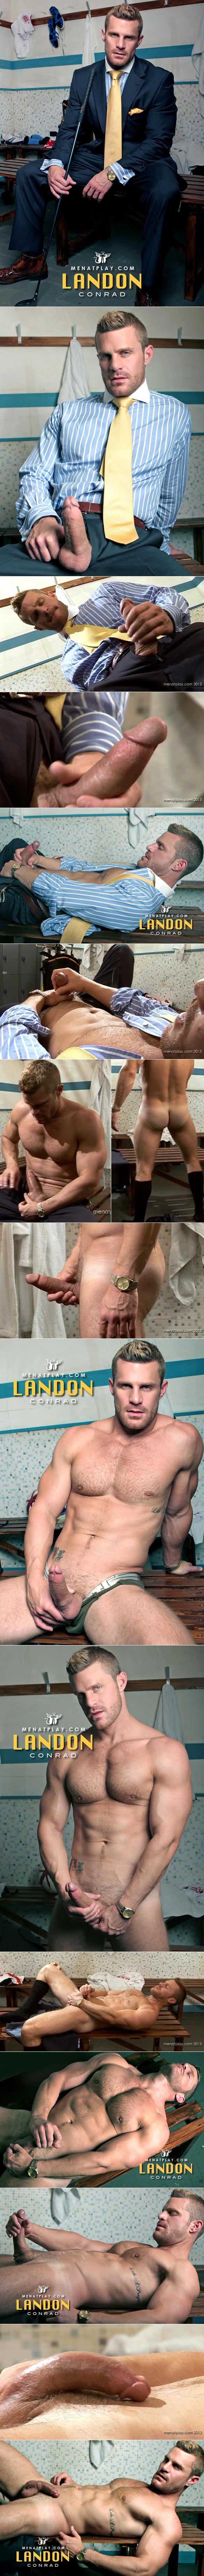 Lockerroom Jerk Off - MenAtPlay: Landon Conrad's hot locker room jerk off | Fagalicious - Gay Porn  Blog